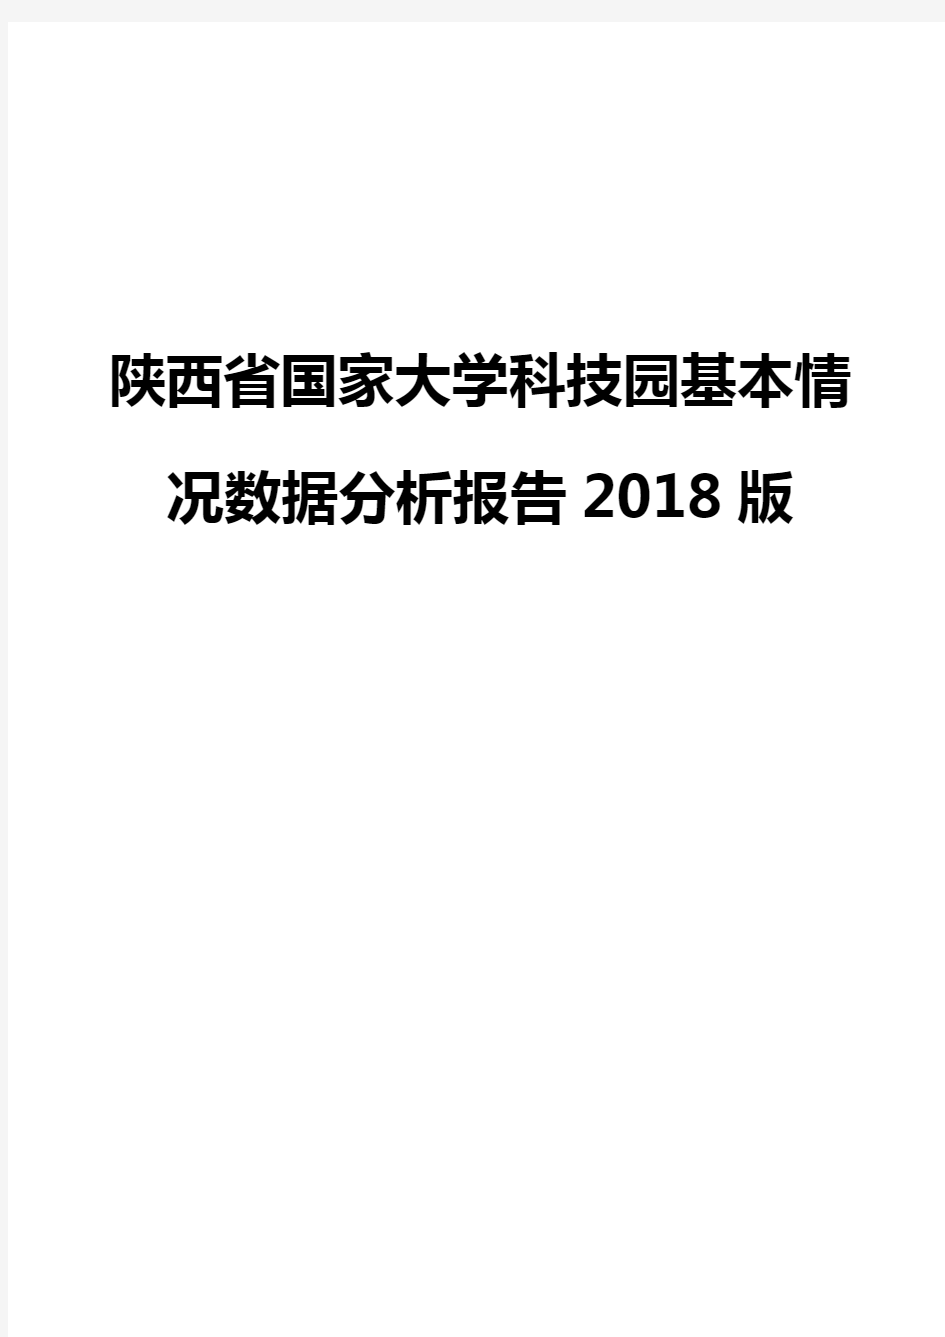 陕西省国家大学科技园基本情况数据分析报告2018版